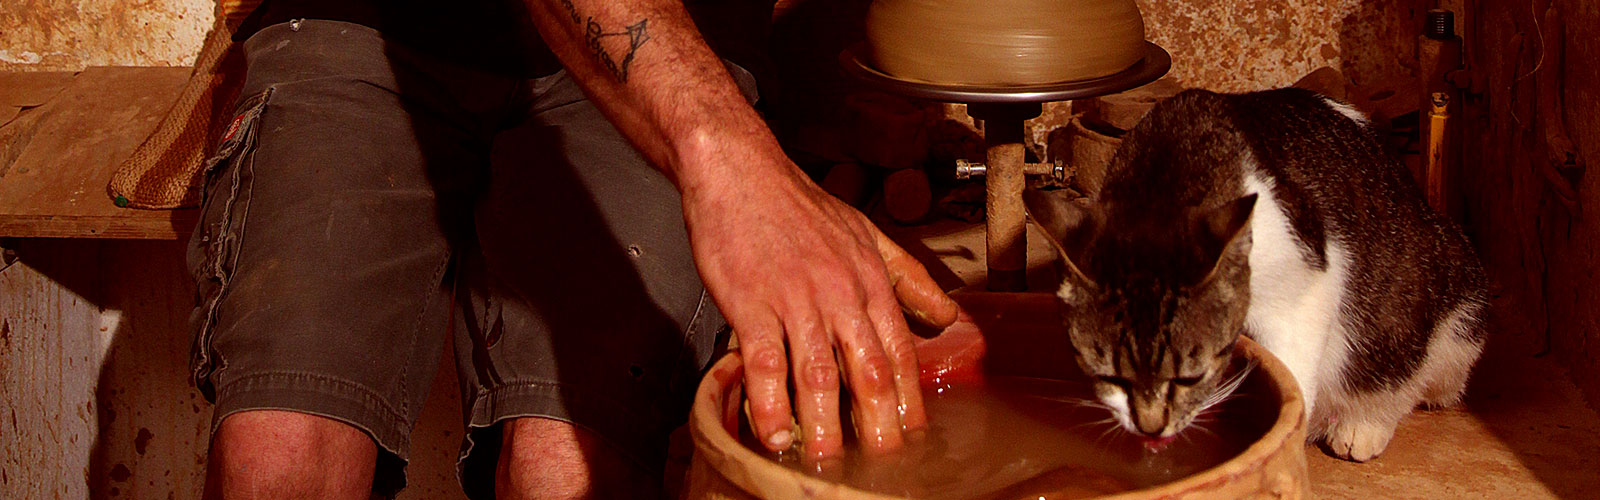 Handmade ceramics in Sifnos